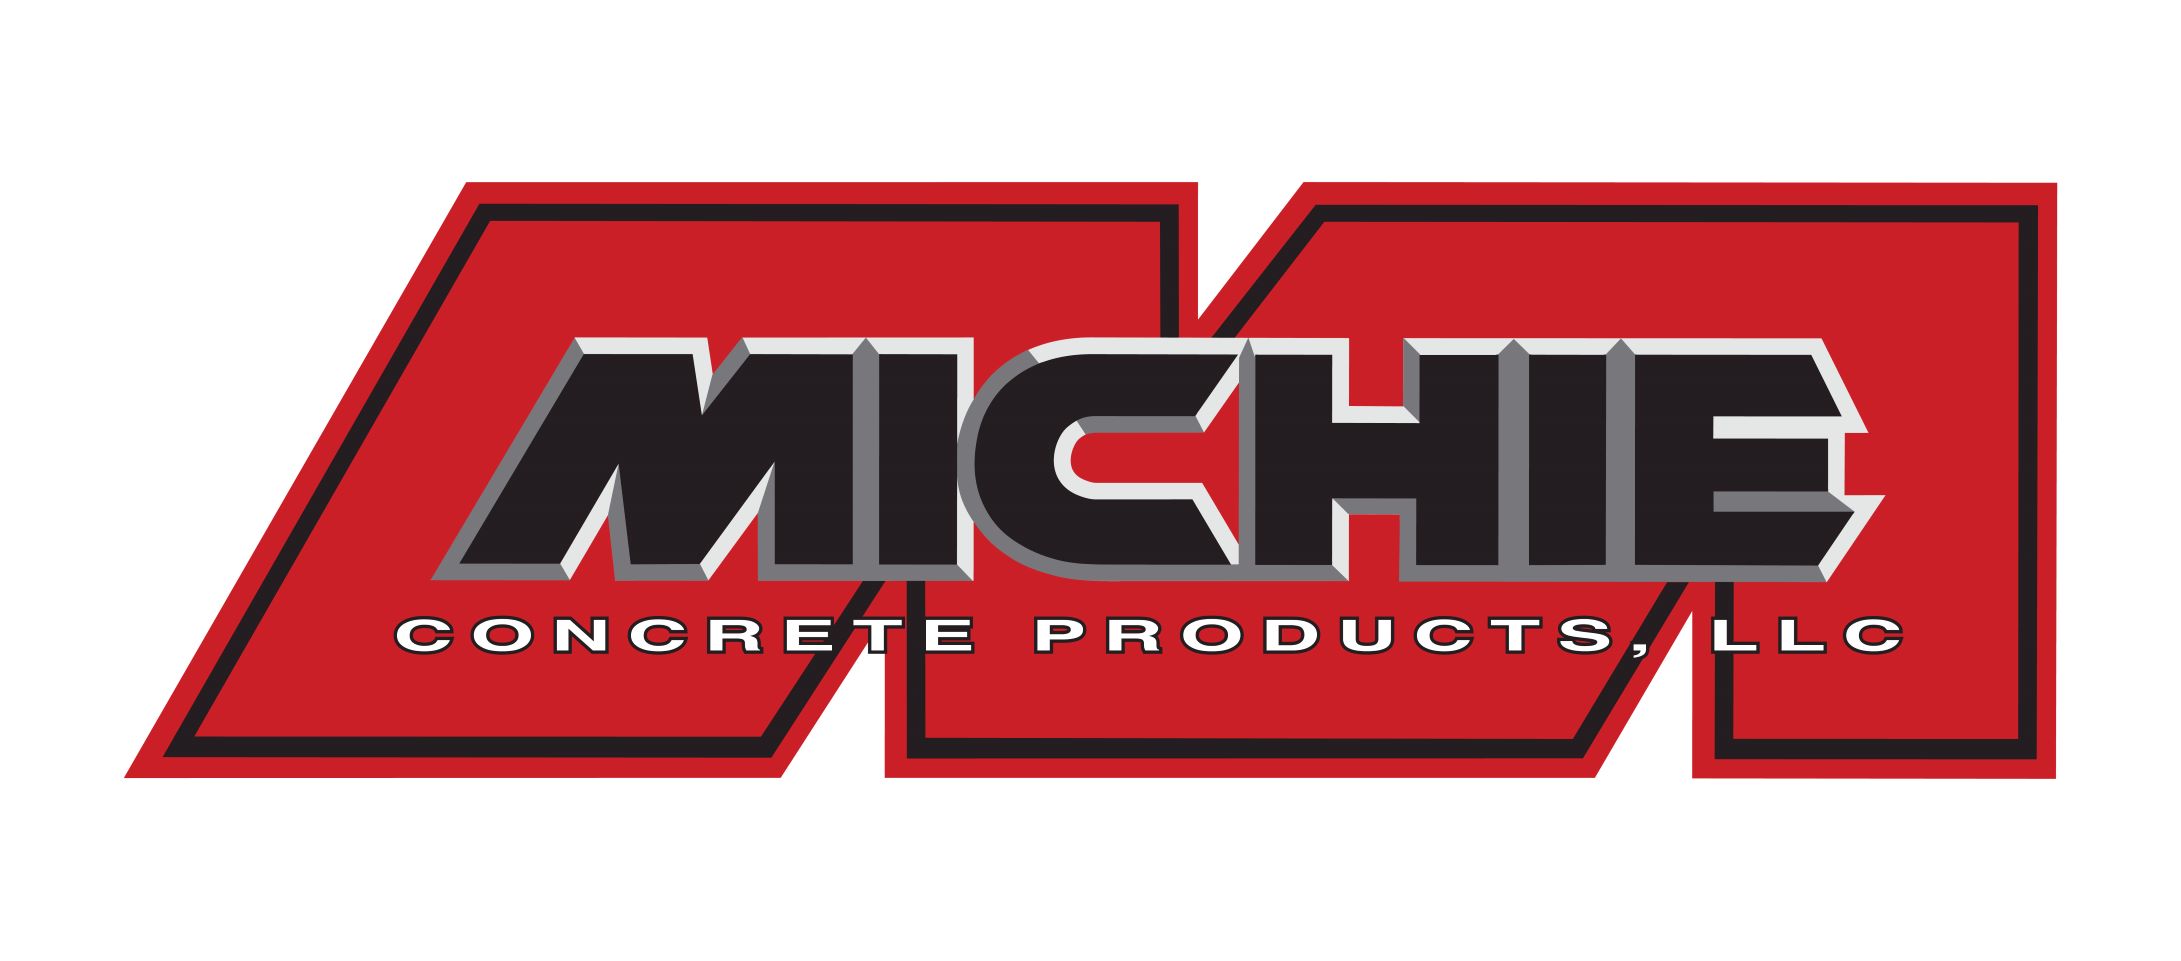 MICHIE CONCRETE PRODUCTS, LLC